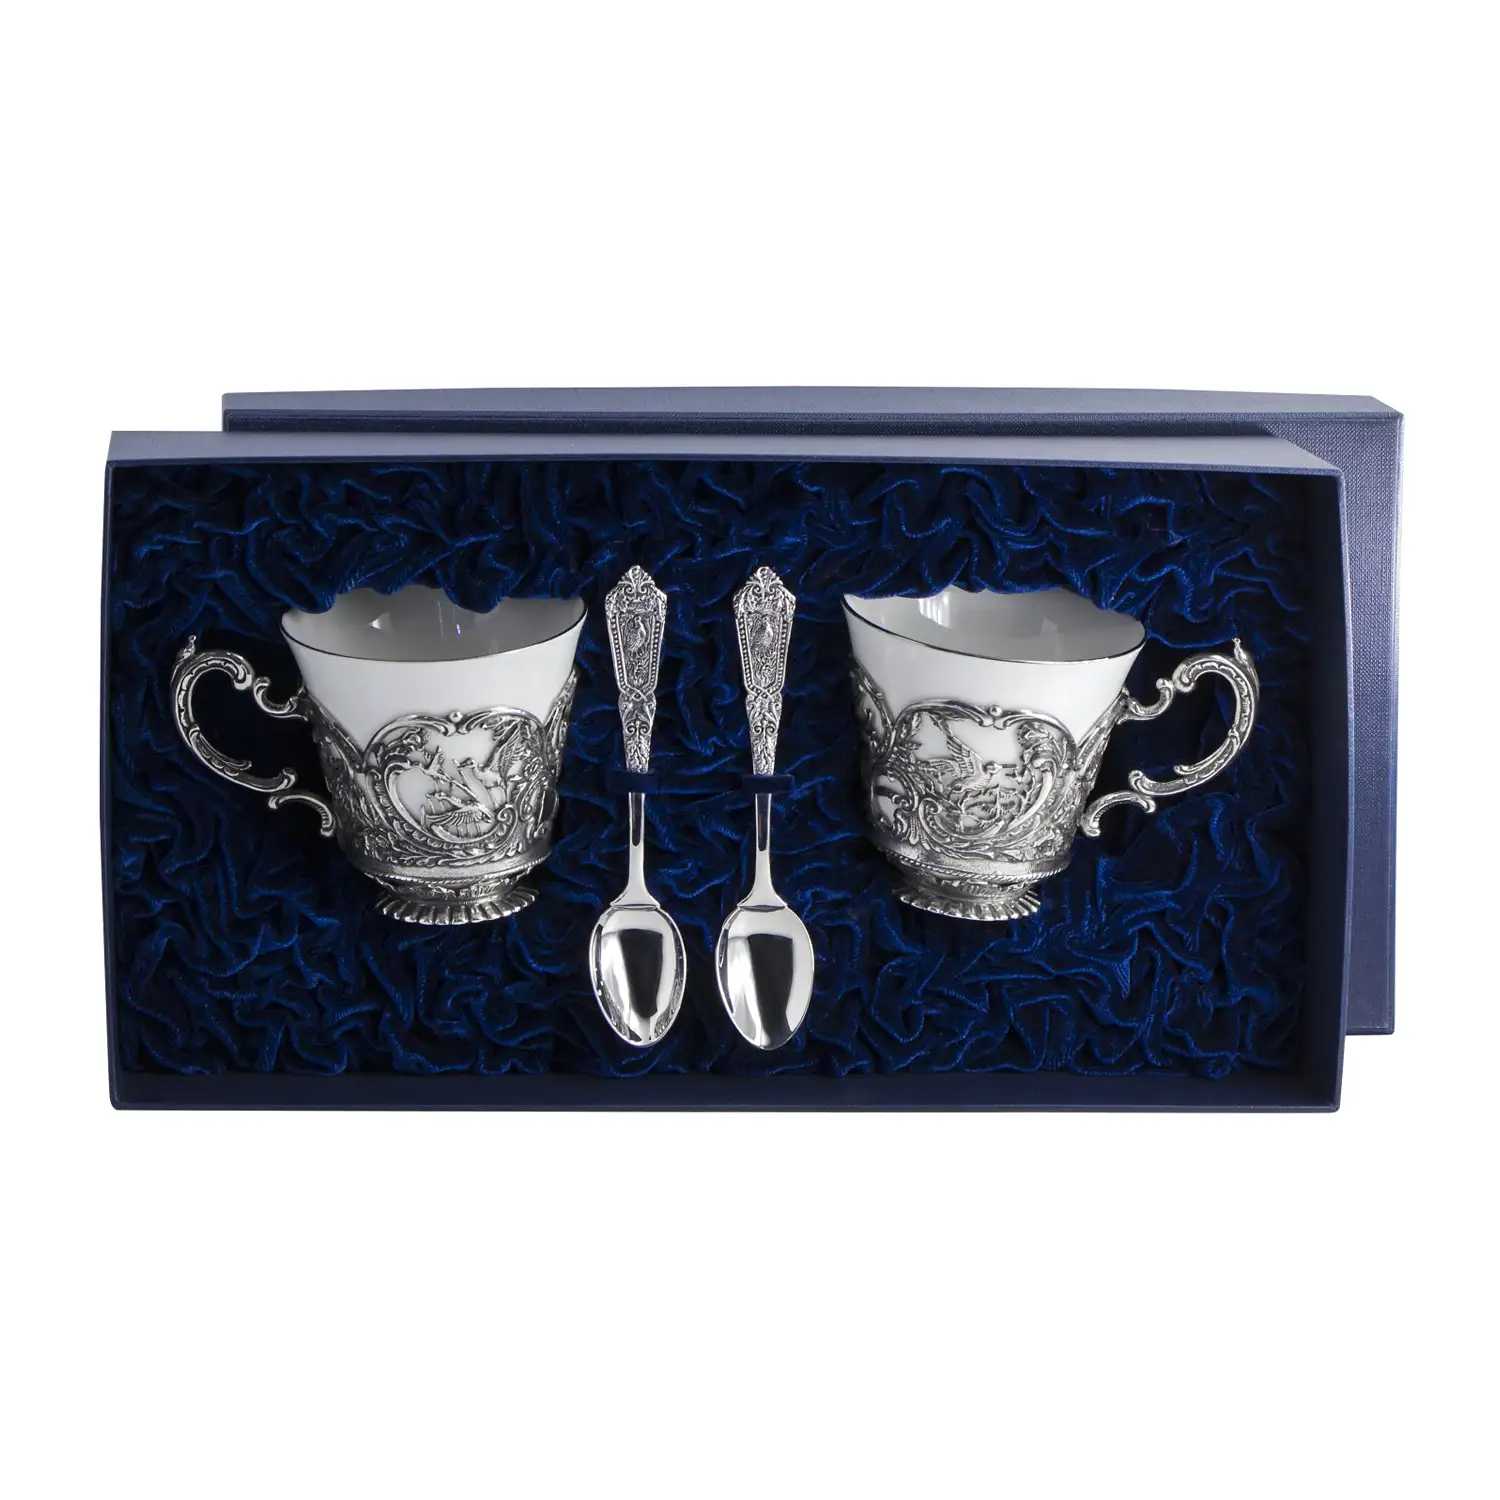 Набор чайных чашек Королевская охота: ложка, чашка (Серебро 925) набор чайных чашек симфония ложка чашка серебро 925